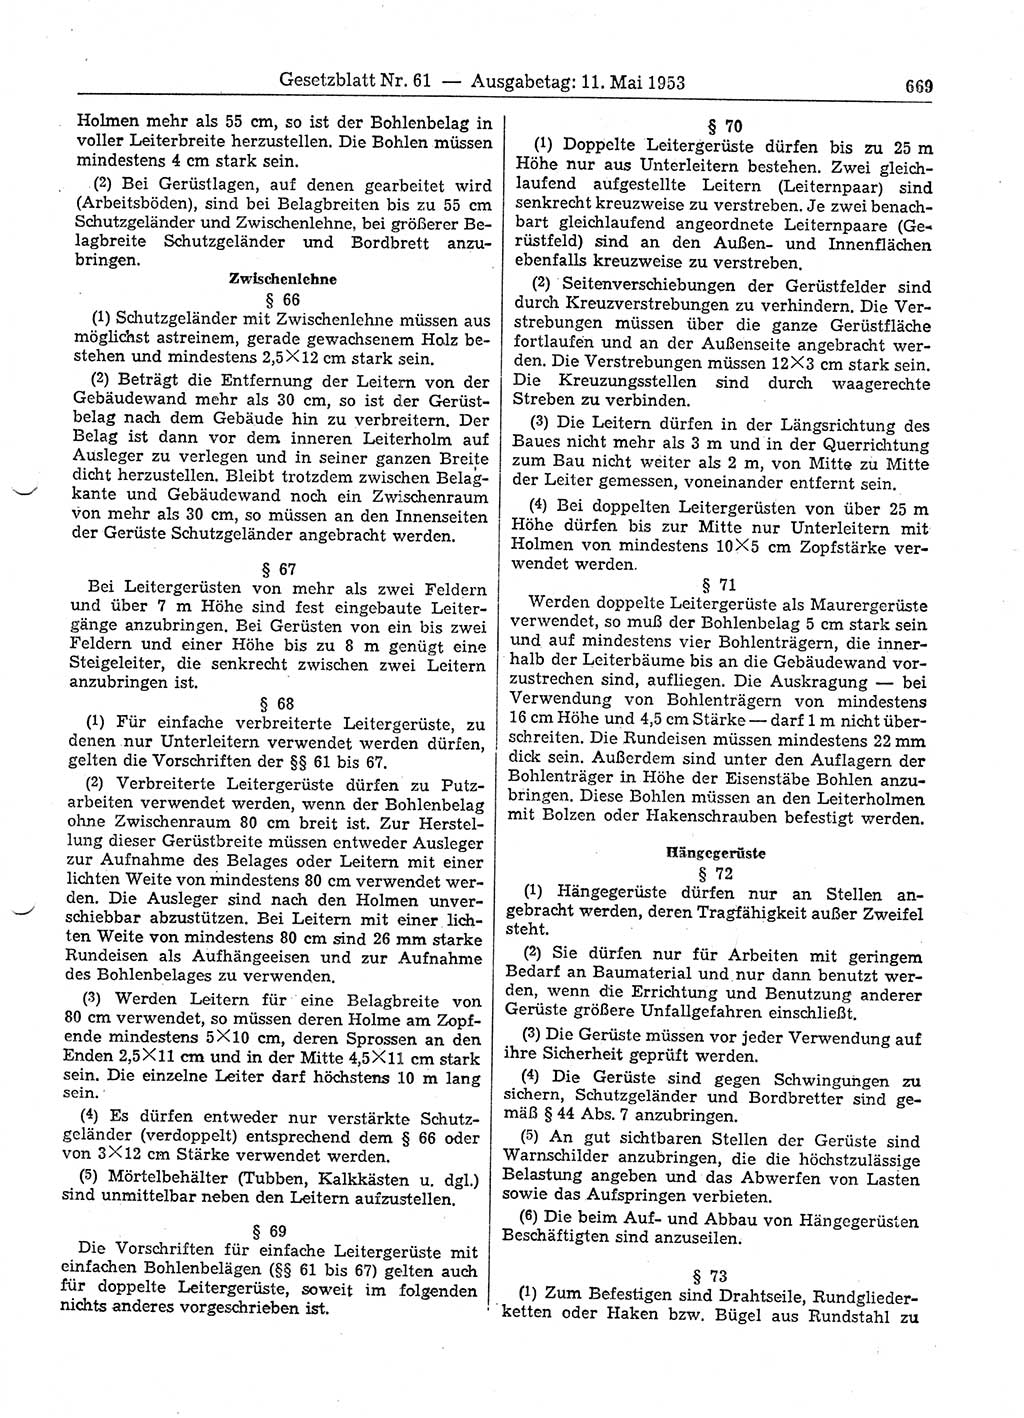 Gesetzblatt (GBl.) der Deutschen Demokratischen Republik (DDR) 1953, Seite 669 (GBl. DDR 1953, S. 669)